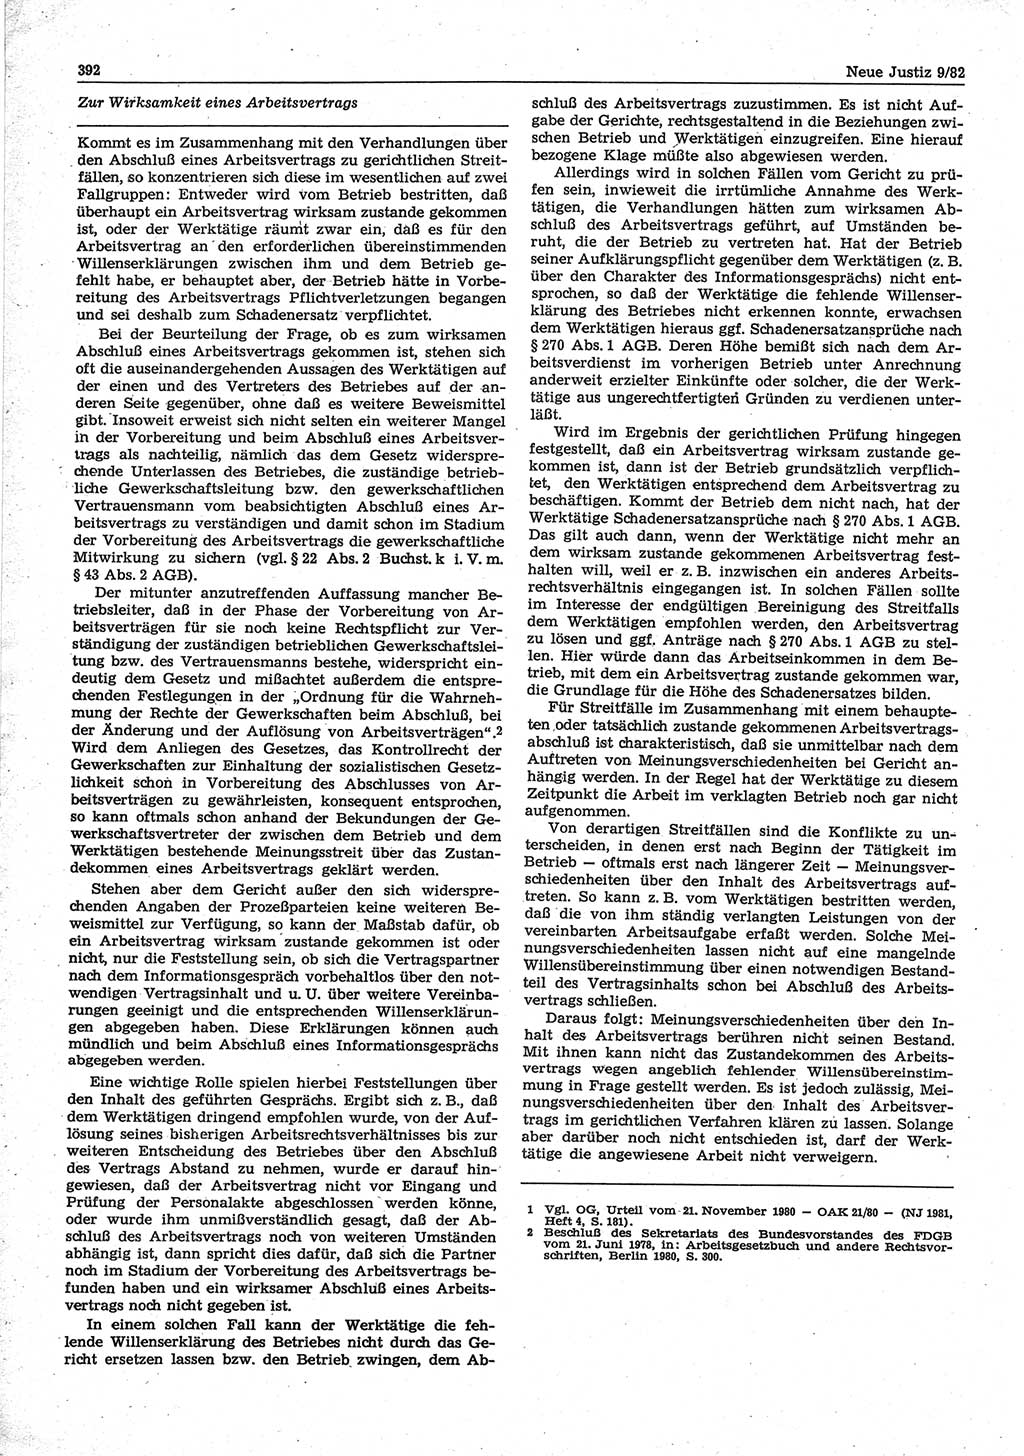 Neue Justiz (NJ), Zeitschrift für sozialistisches Recht und Gesetzlichkeit [Deutsche Demokratische Republik (DDR)], 36. Jahrgang 1982, Seite 392 (NJ DDR 1982, S. 392)